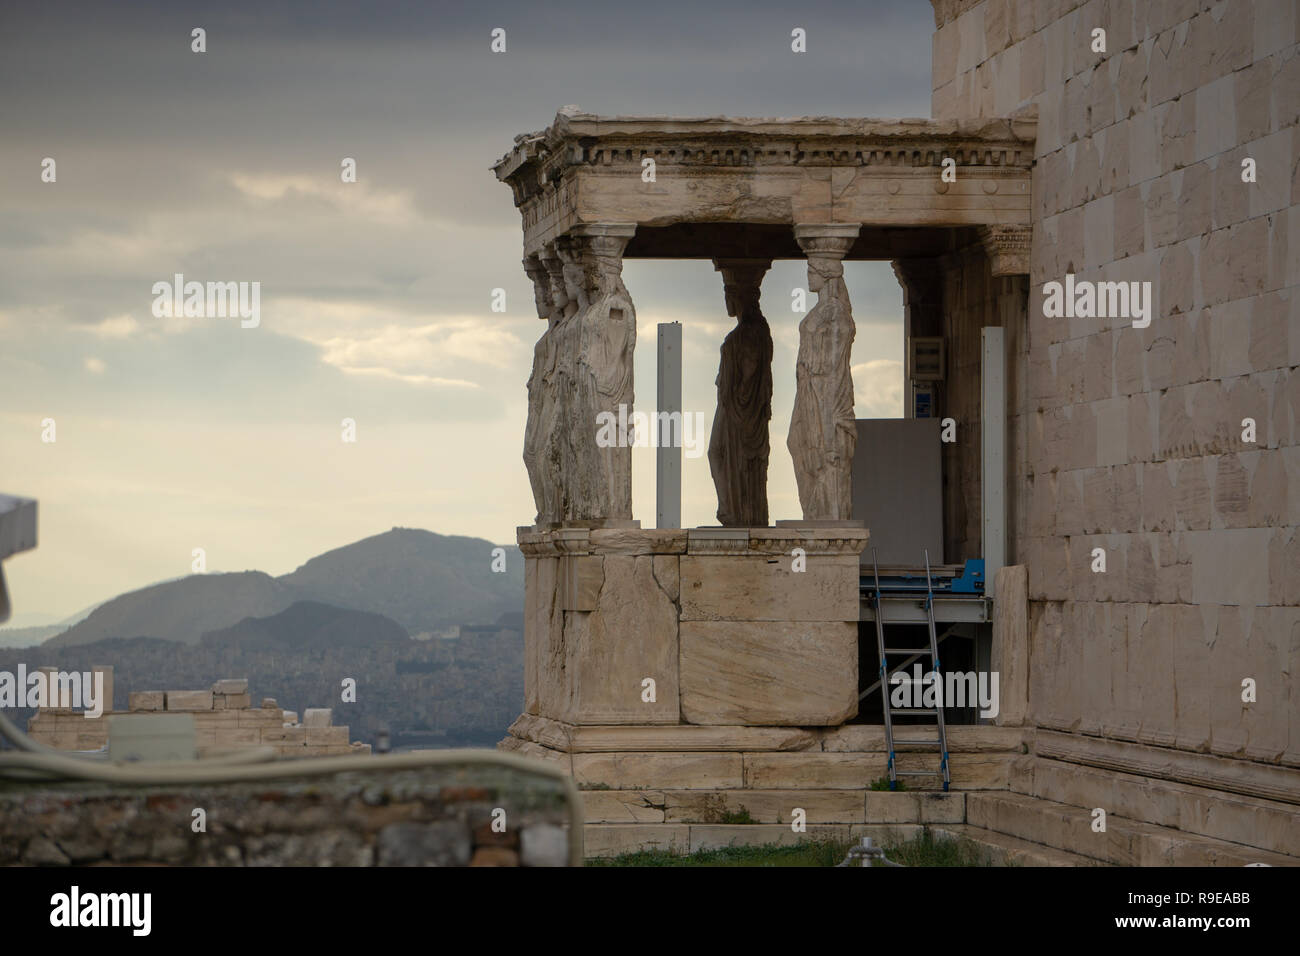 Esta vista del cielo iluminado por la ciudad moderna de Atenas, visto a través de las columnas del antiguo Templo de Atenea Niké era imposible poner en palabras Foto de stock